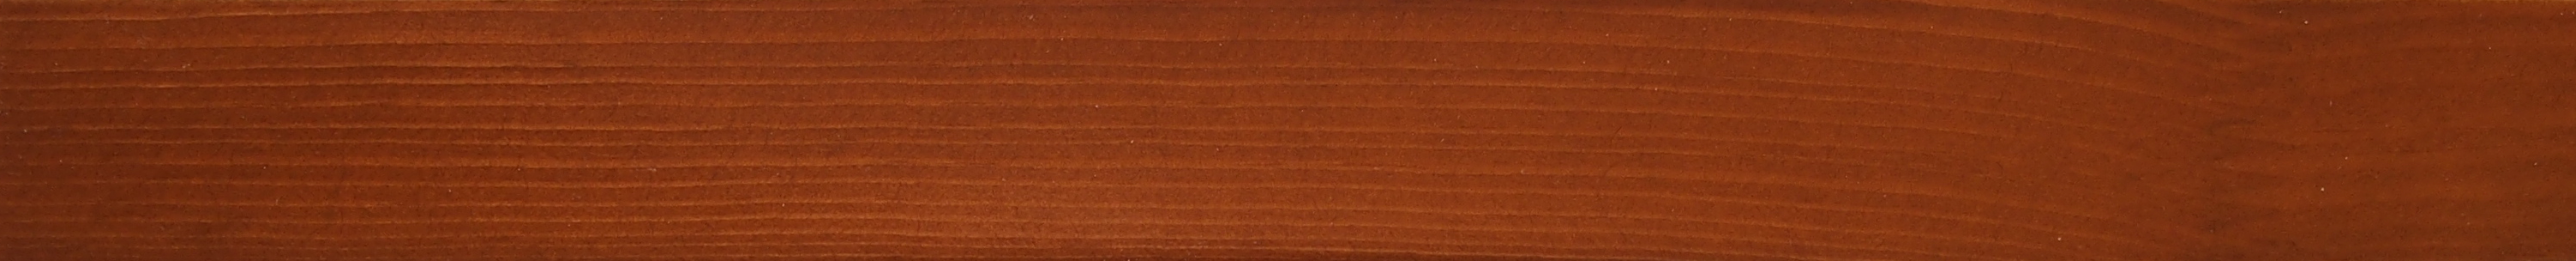 Деревянное окно - полукруг из сосны Модель 026 Тик